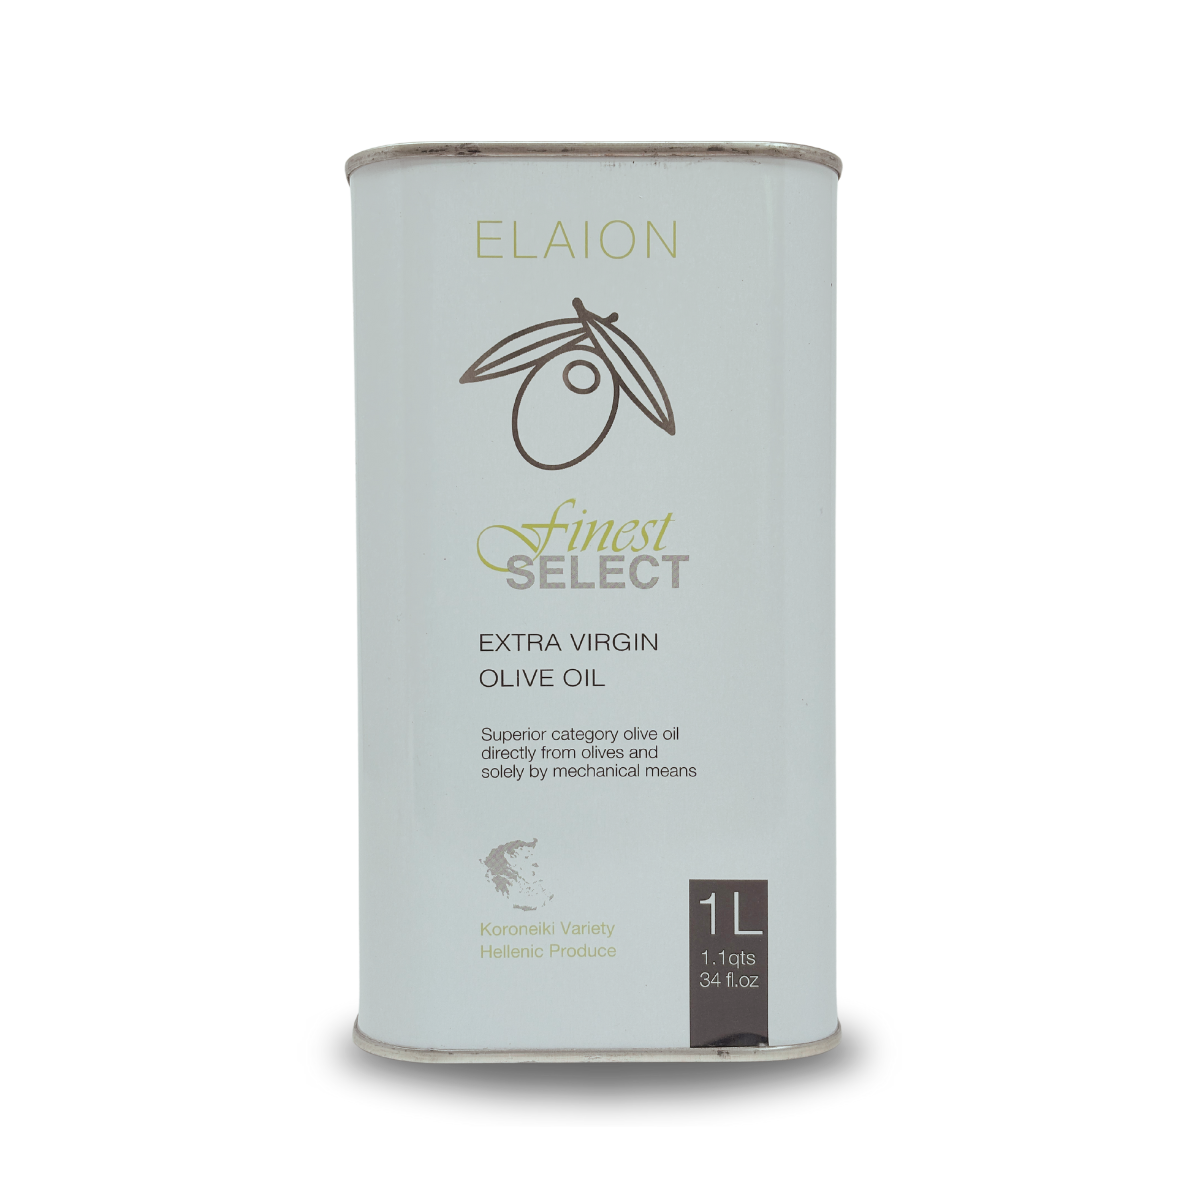 Olivenöl Elaion finest Select 1l Kanister